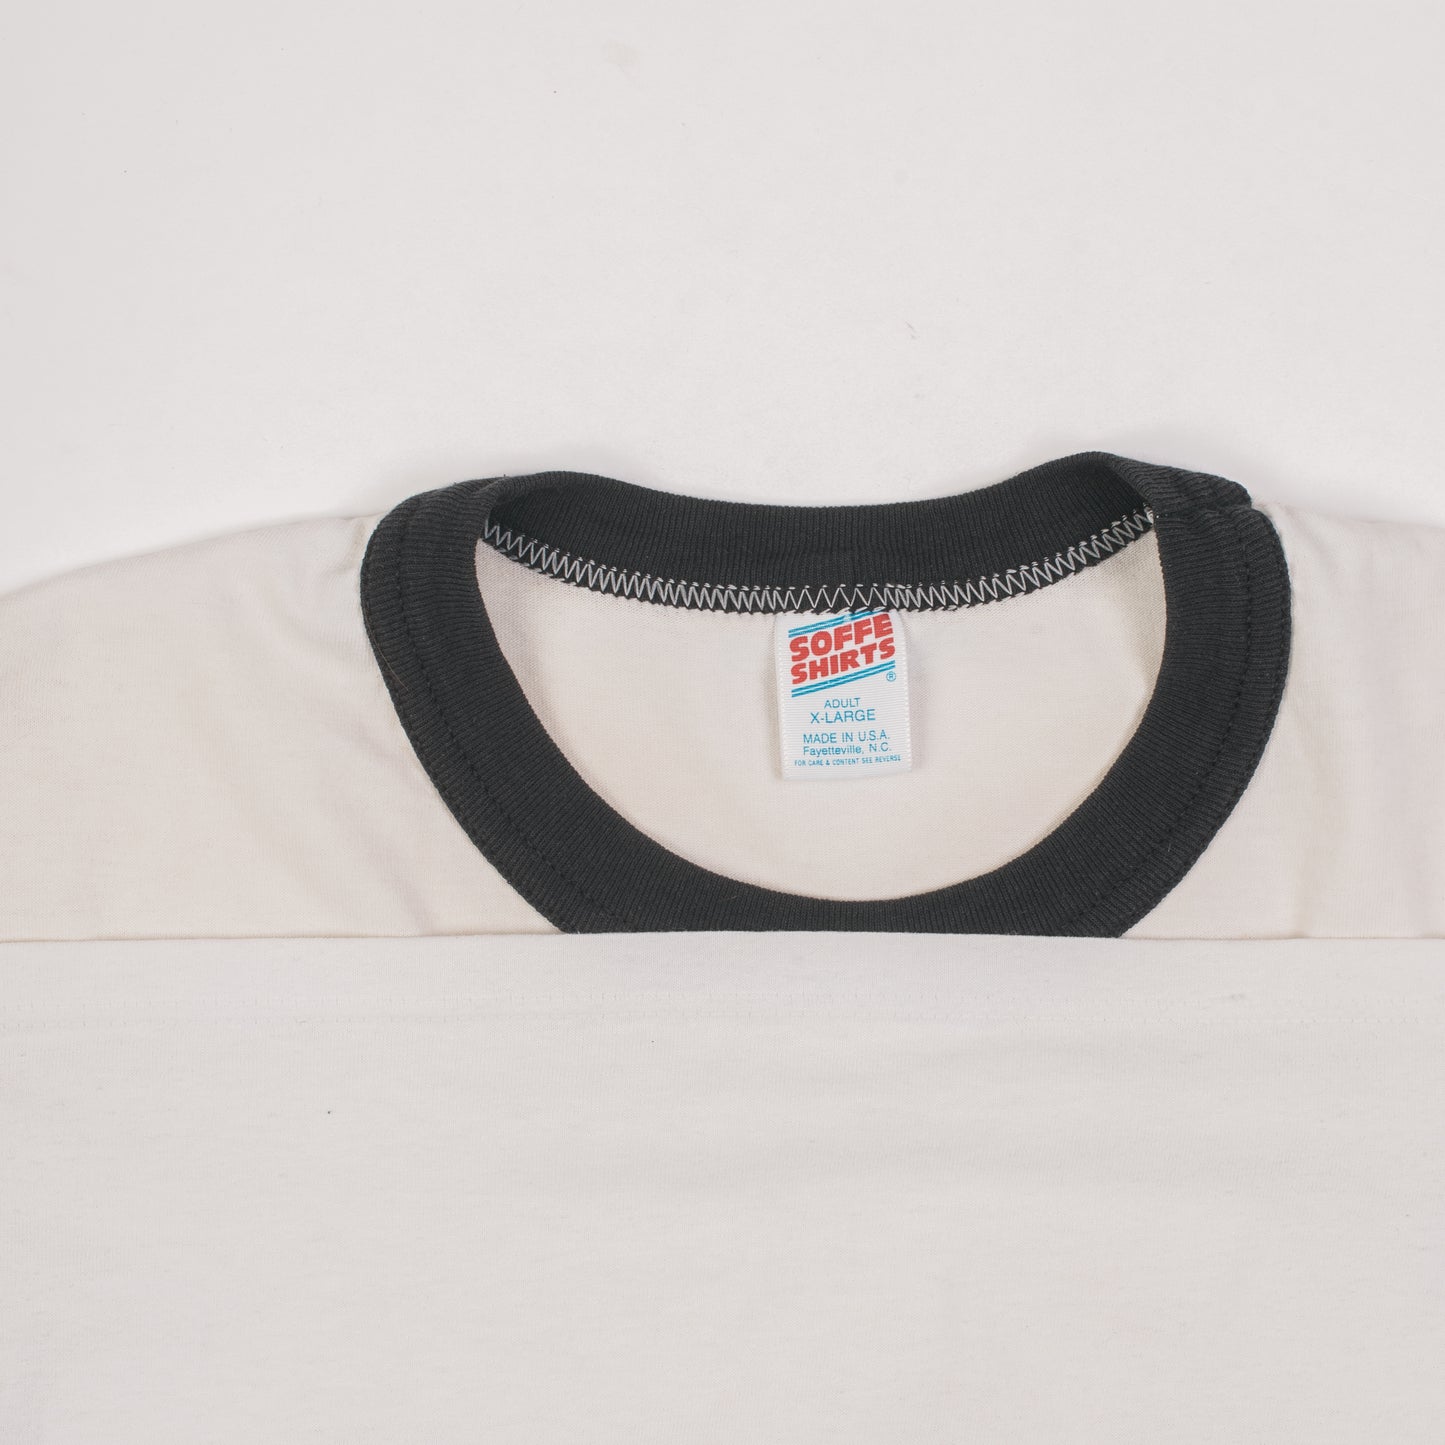 Vintage 90’s Jawbreaker Ringer T-Shirt